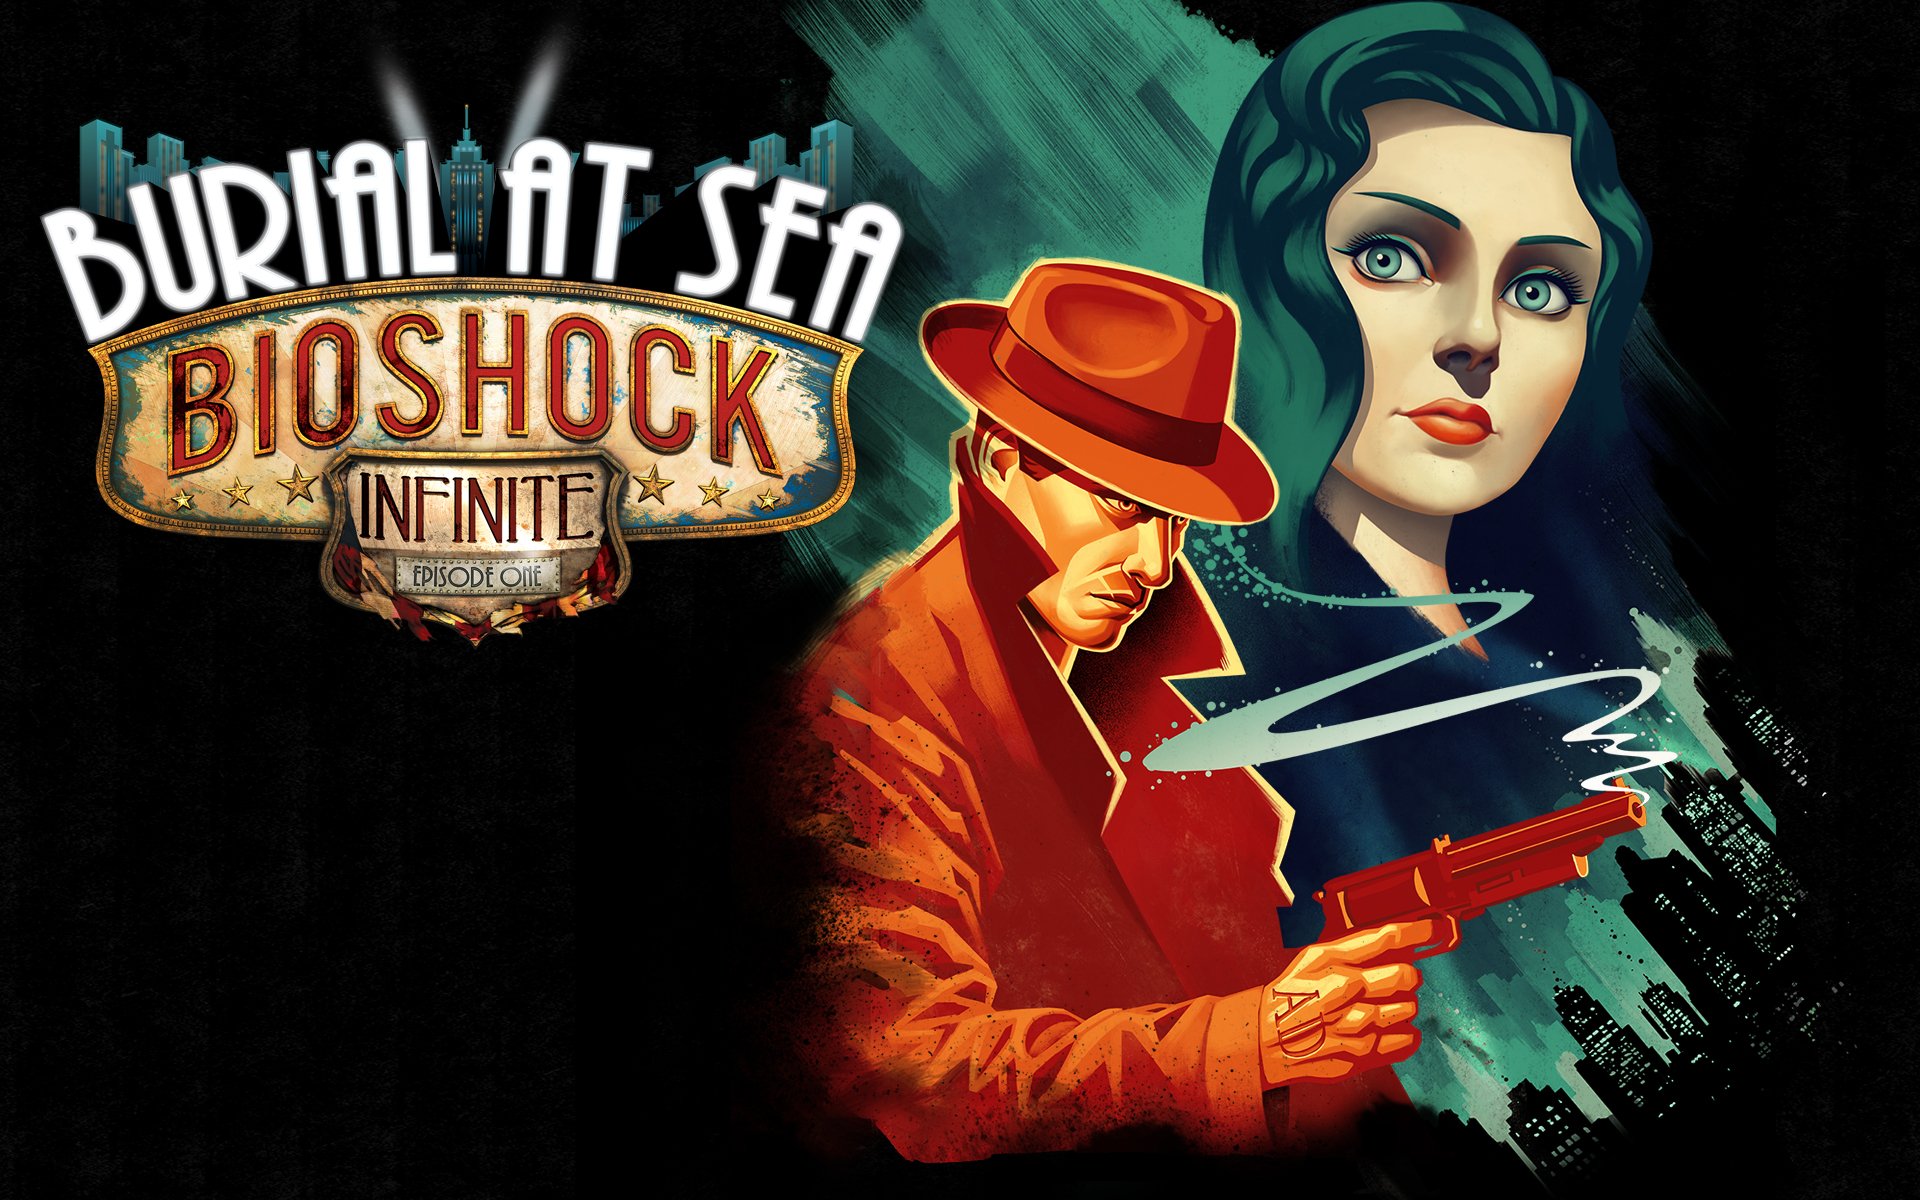 BioShock Infinite: Burial at Sea Wallpapers